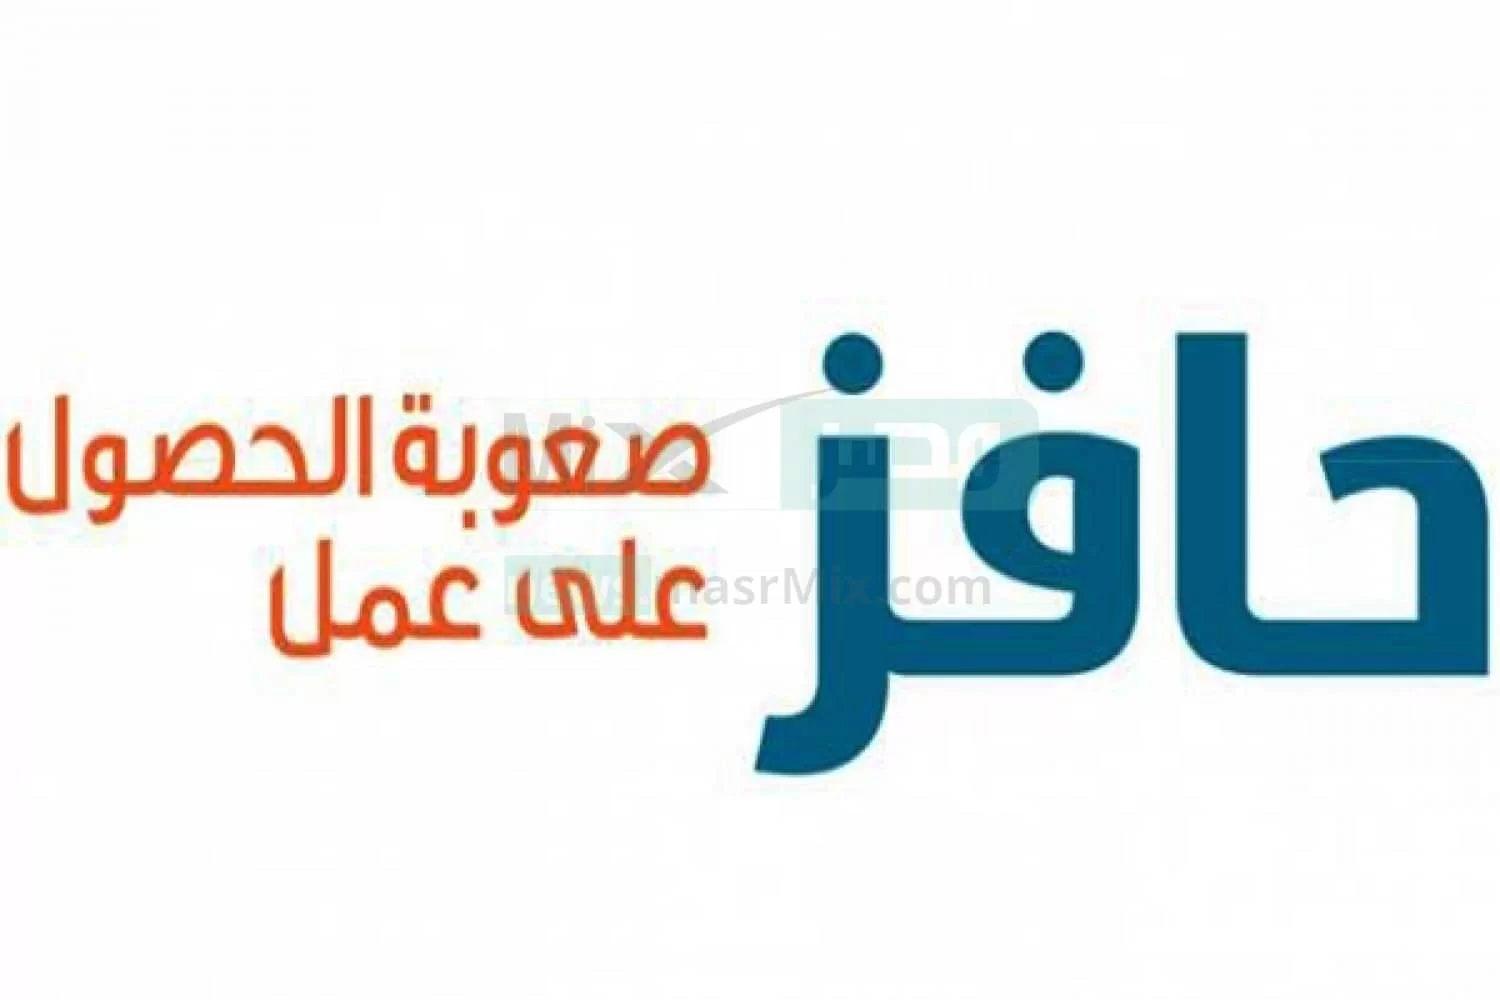 خدمة عملاء حافز.webp - مدونة التقنية العربية